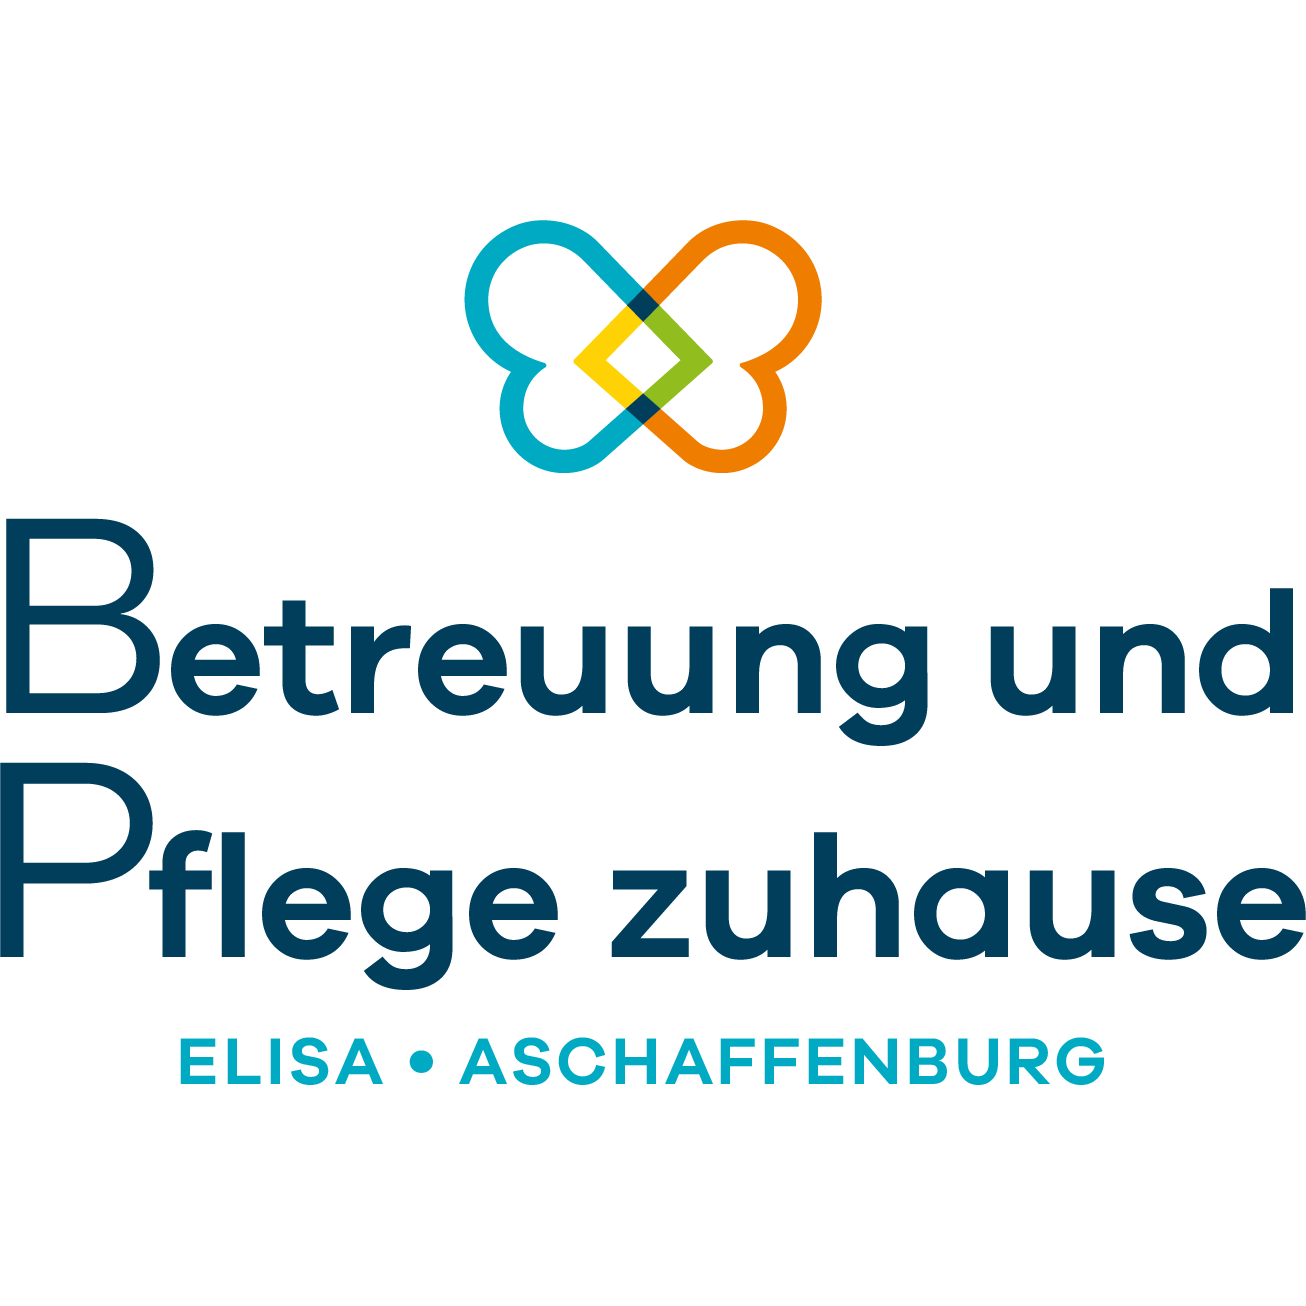 Betreuung und Pflege zuhause Elisa Aschaffenburg Logo